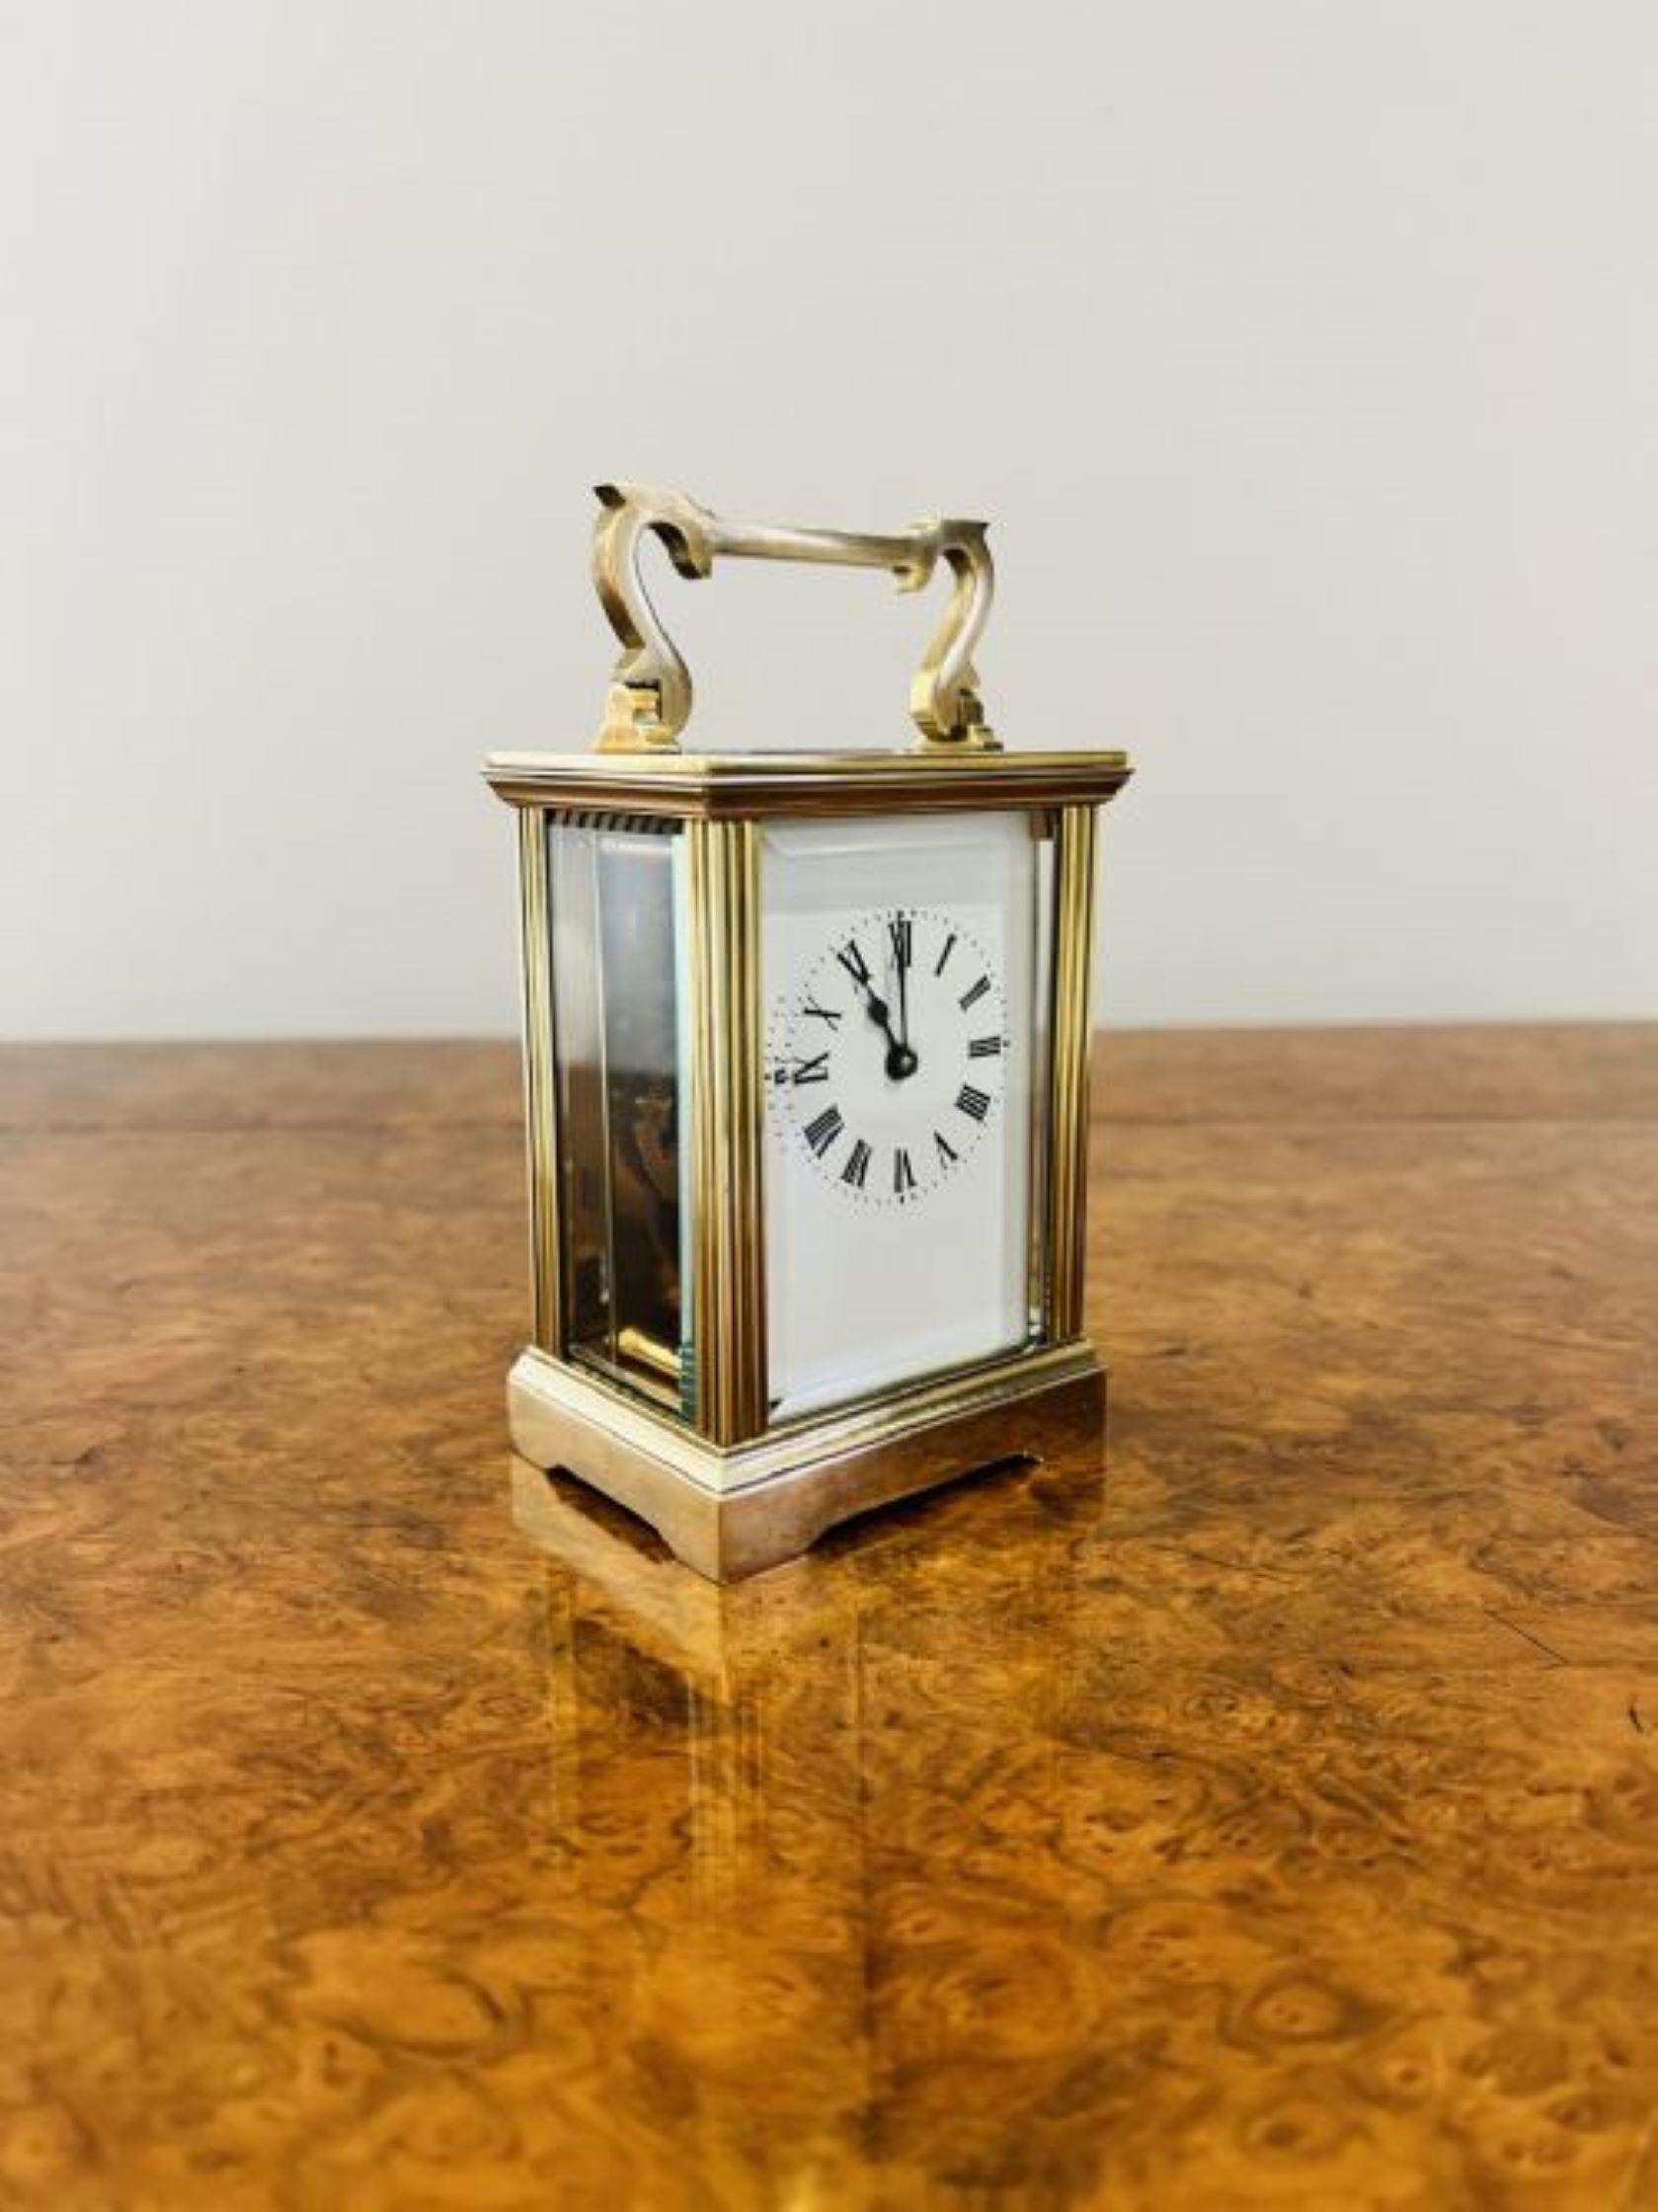 Horloge victorienne ancienne de qualité en laiton avec un mouvement français de huit jours, un bord biseauté, des panneaux en verre et une poignée de transport en forme sur le dessus.
Veuillez noter que toutes nos horloges sont révisées avant d'être